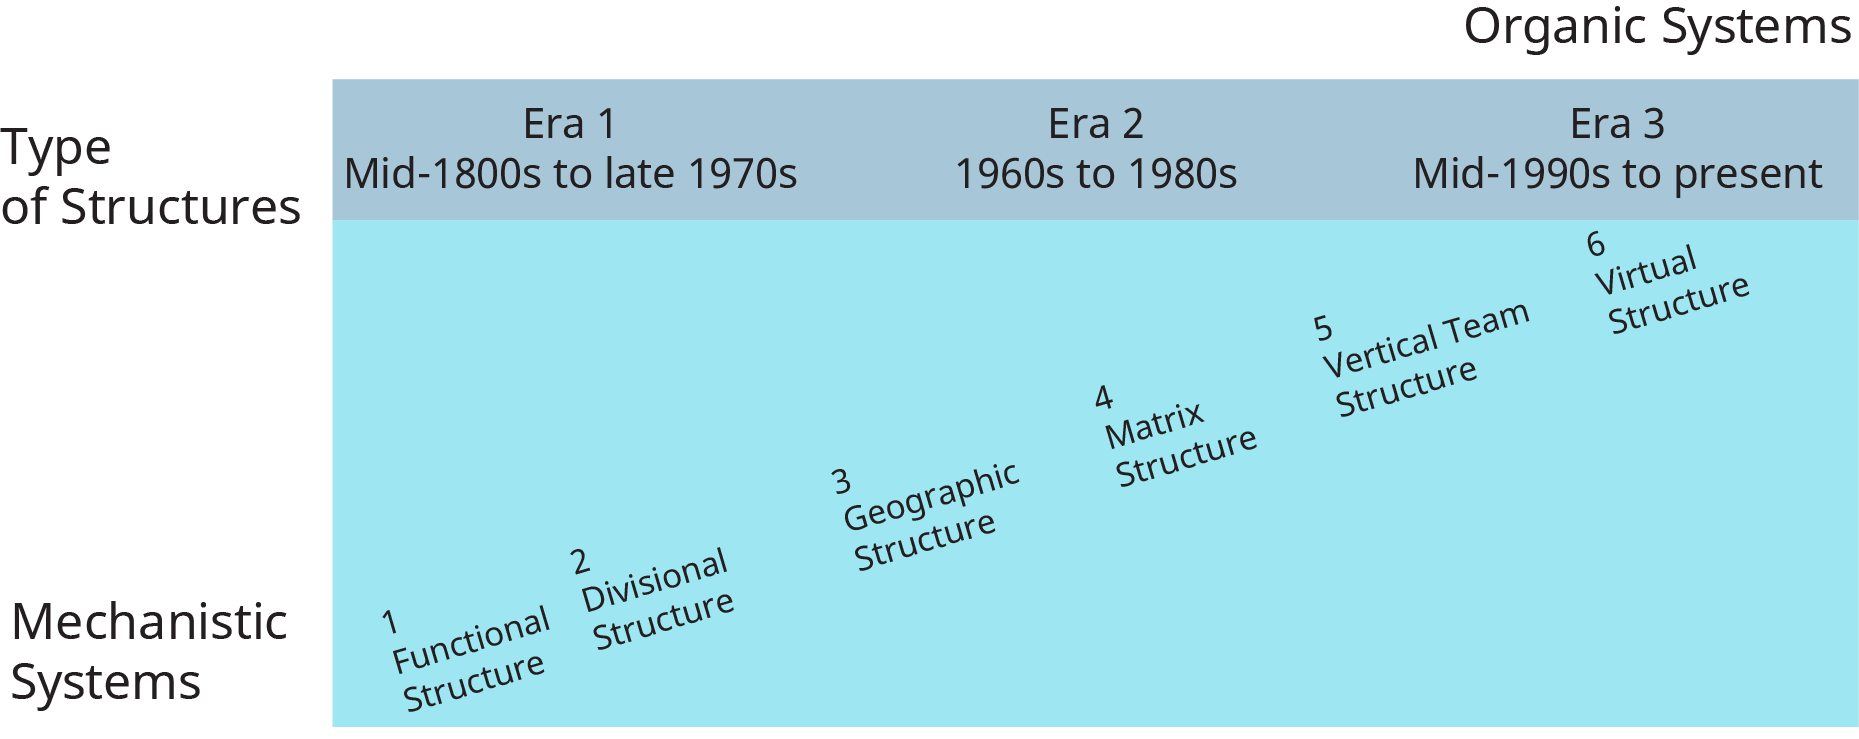 Un diagrama ilustra las diferentes estructuras organizativas que evolucionaron con el tiempo.